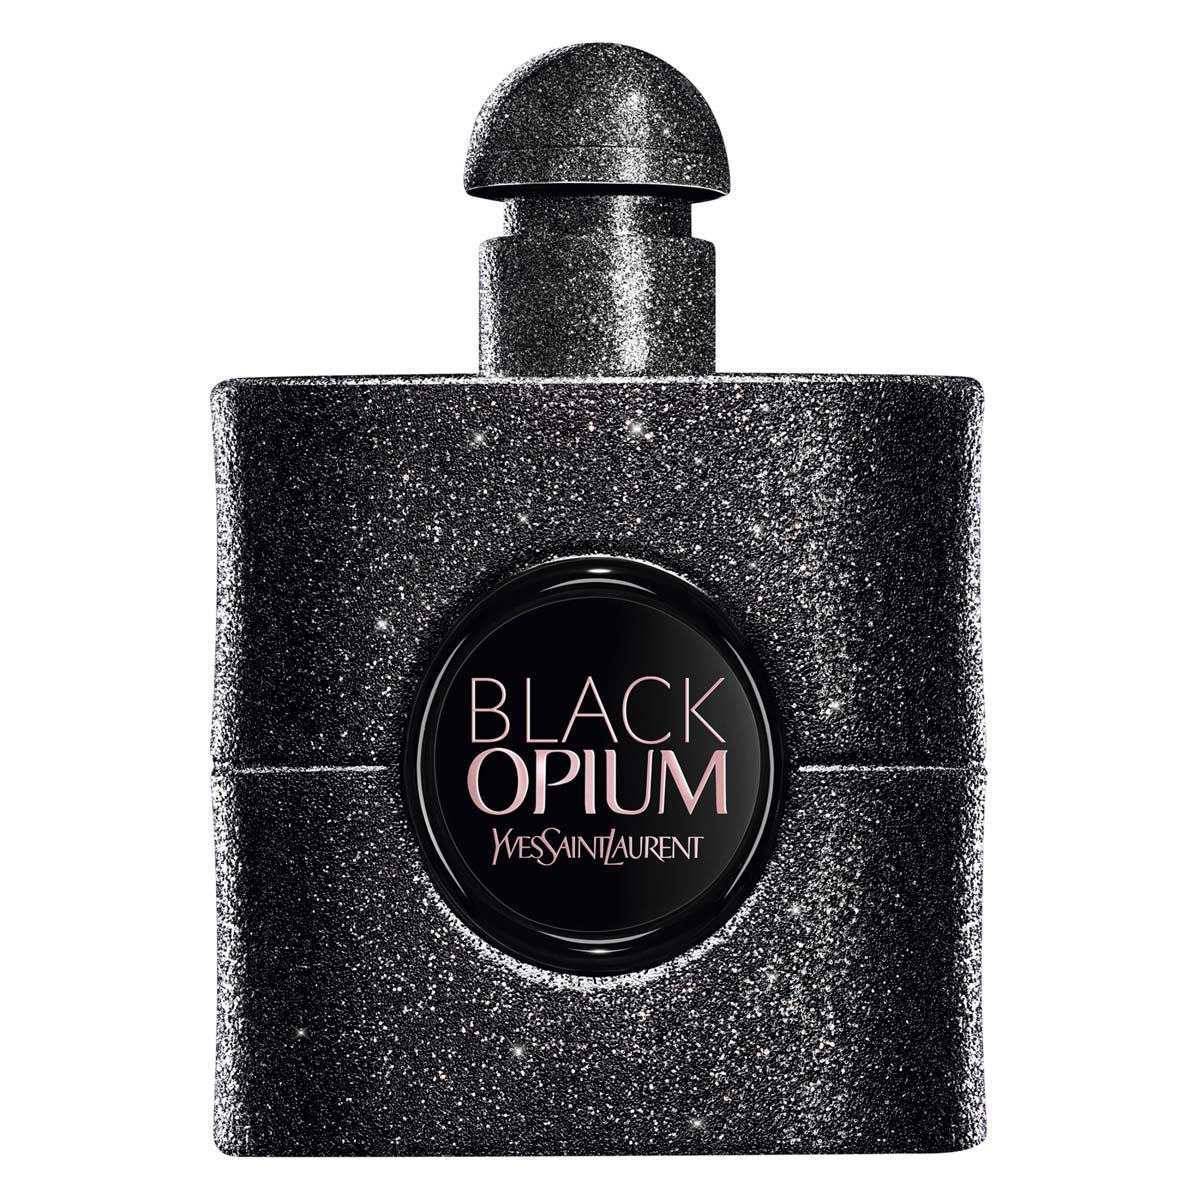 Ysl Beauty Black Opium...